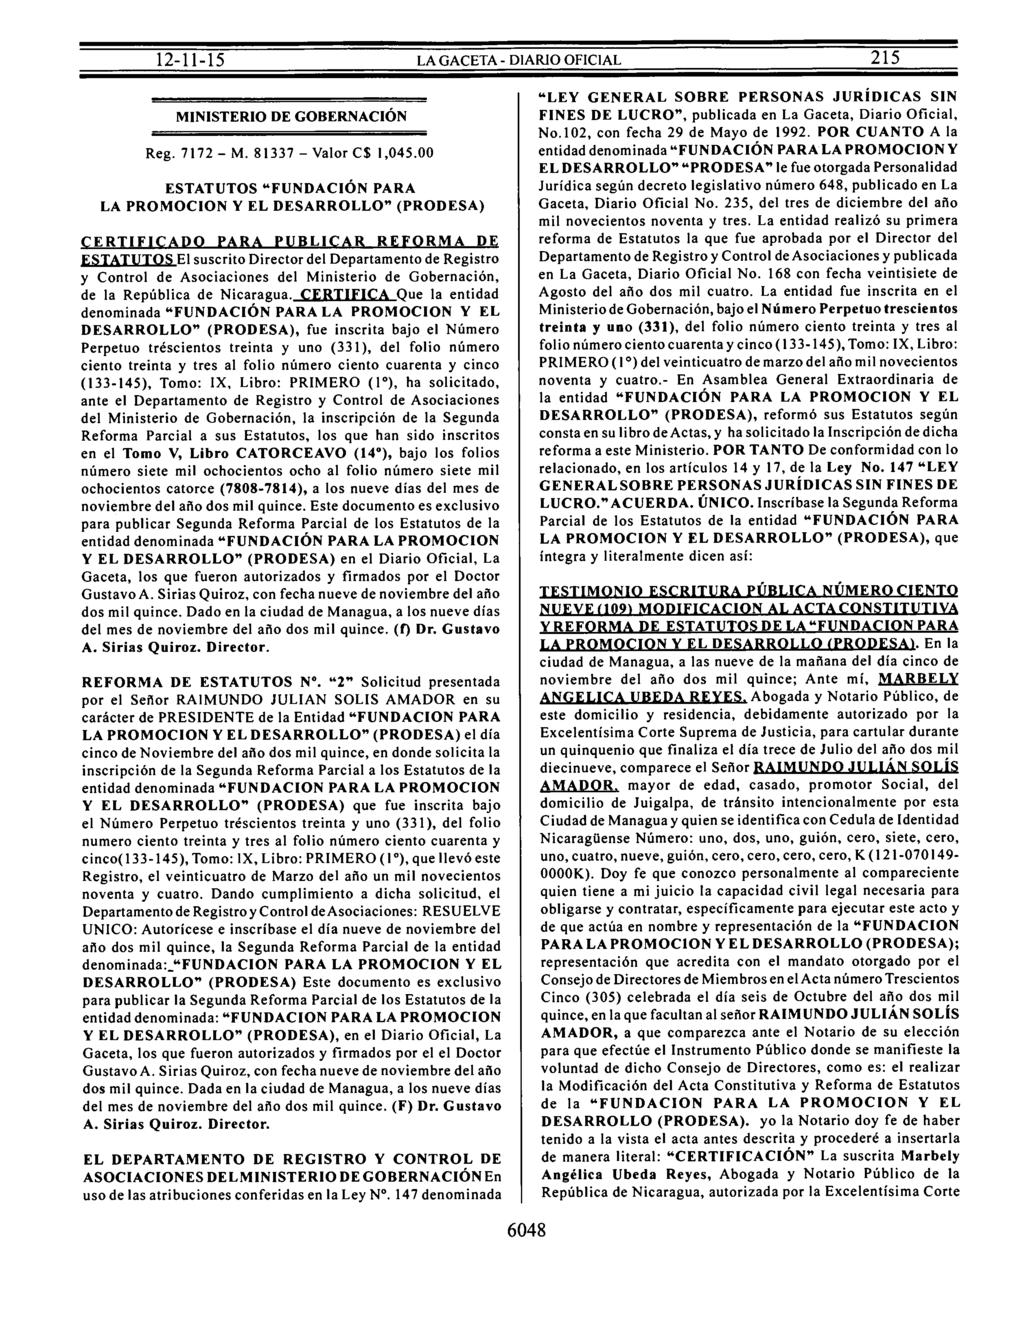 MINISTERIO DE GOBERNACIÓN Reg. 7172 - M. 81337 - Valor C$ 1,045.